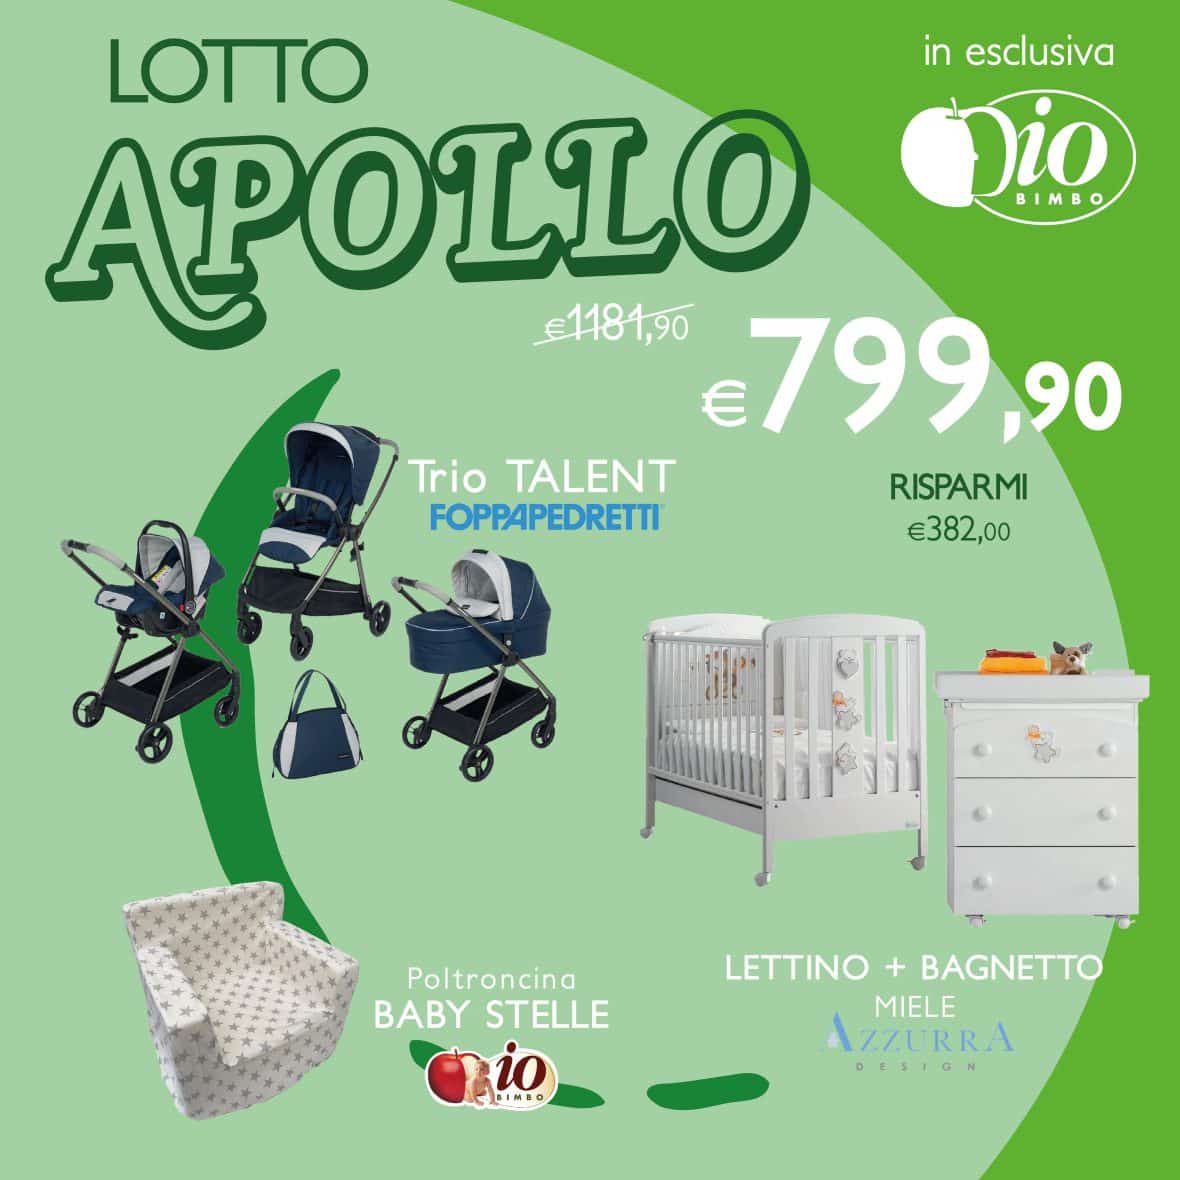 Lotto APOLLO